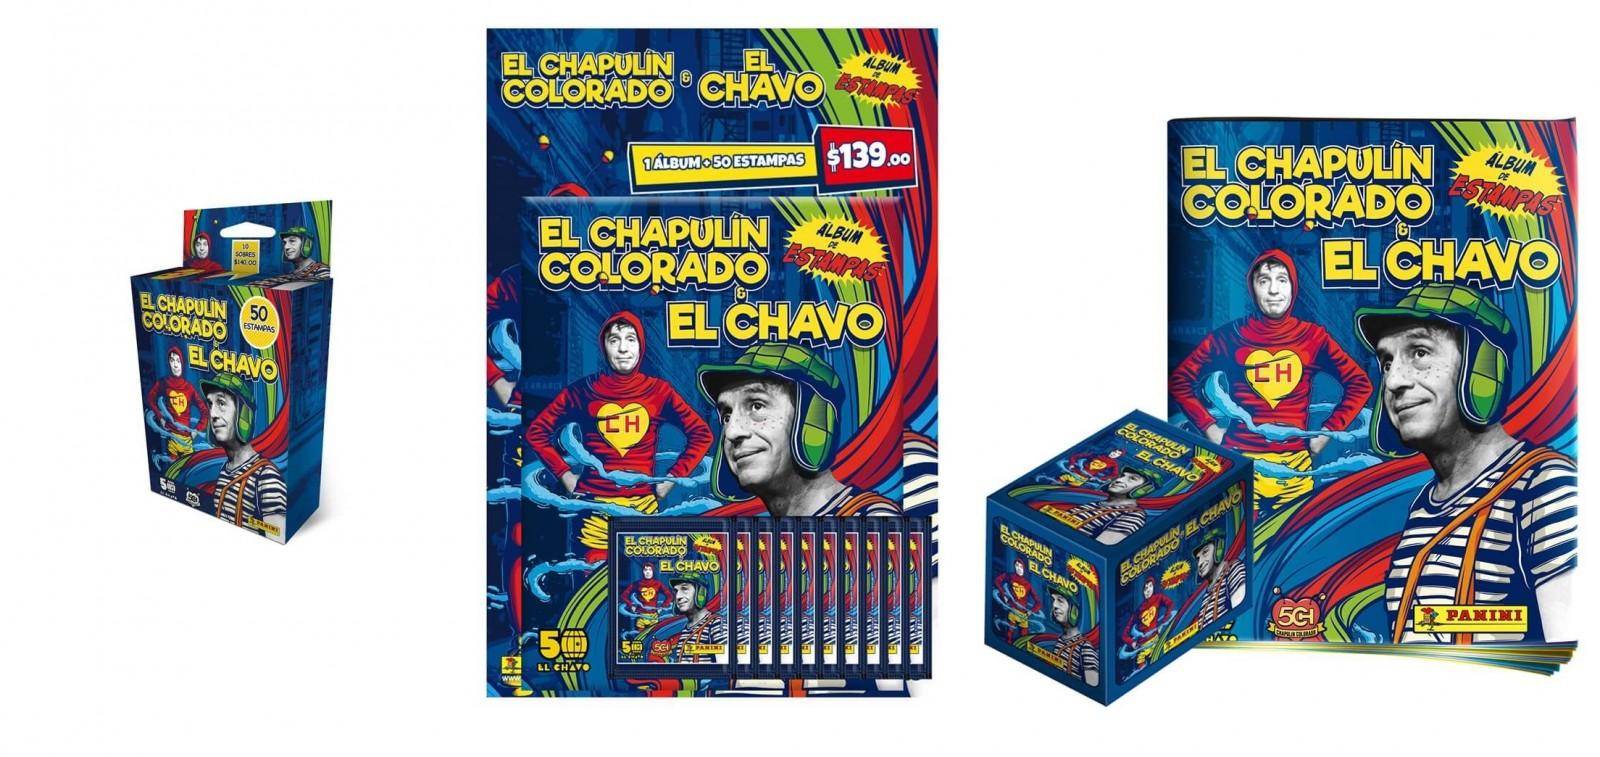 ¡No contaban con su astucia! Panini presenta álbum edición 50 Años de El Chapulín Colorado y El Chavo 4